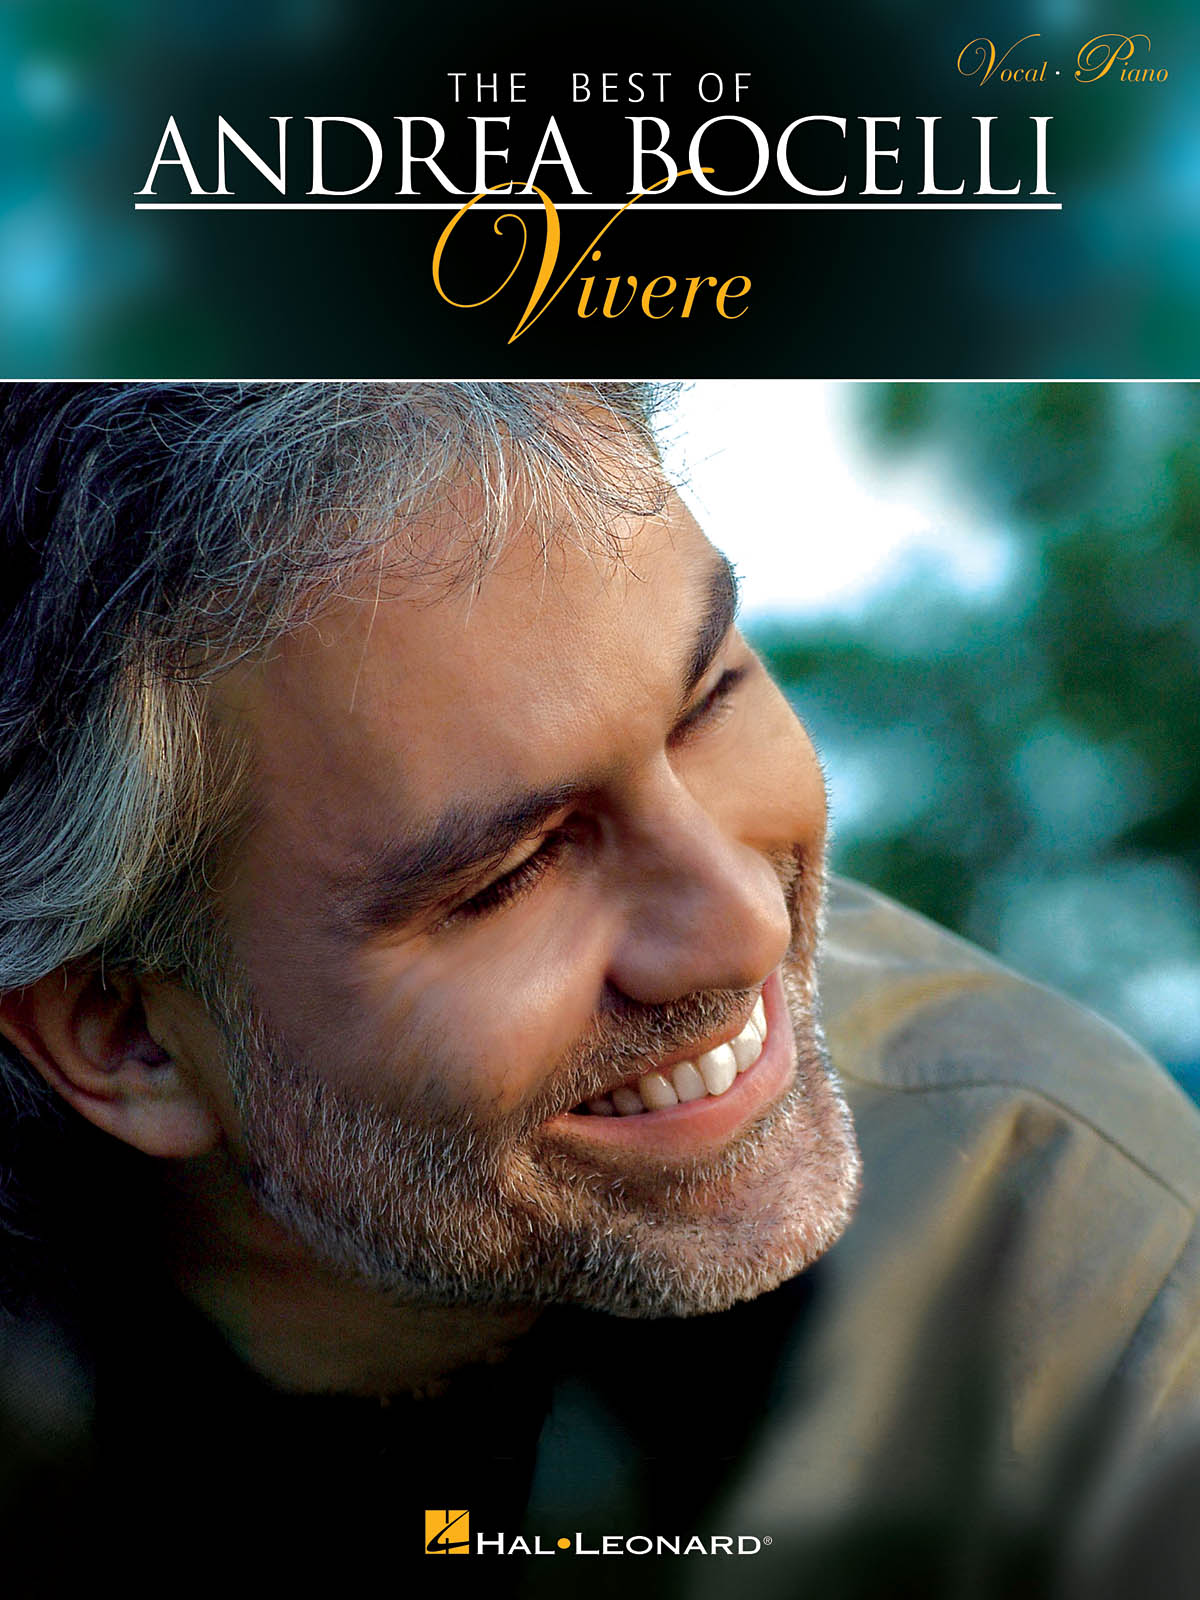 Андреа Бочелли. Андреа Бочелли vivere. The best of Andrea Bocelli vivere. Andrea Bocelli Greatest Hits - the best of Andrea Bocelli. Андреа бочелли vivo